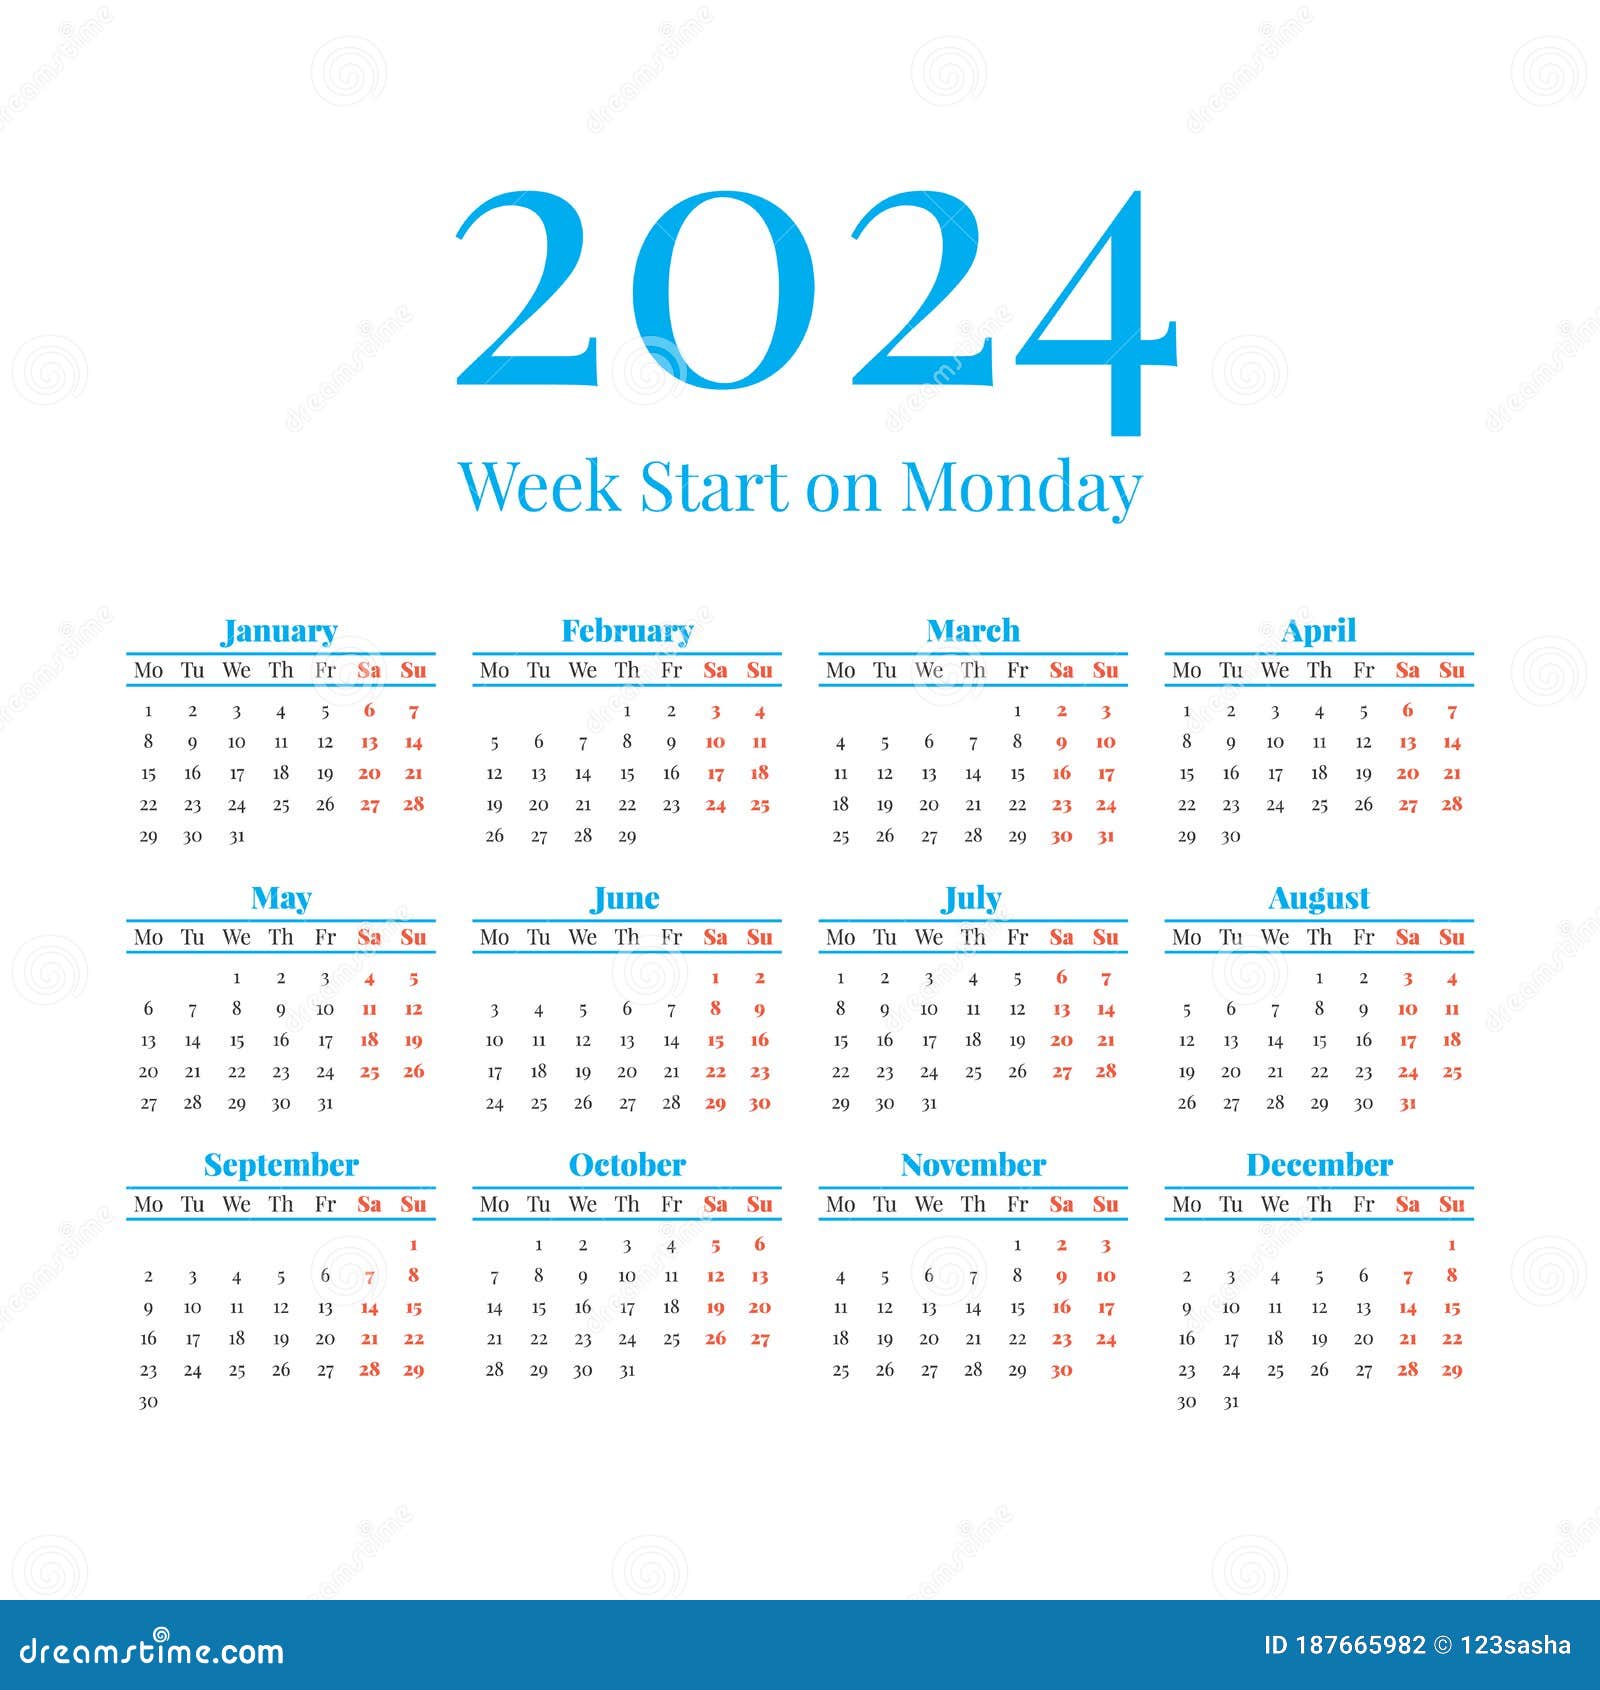 2023-calendar-with-week-numbers